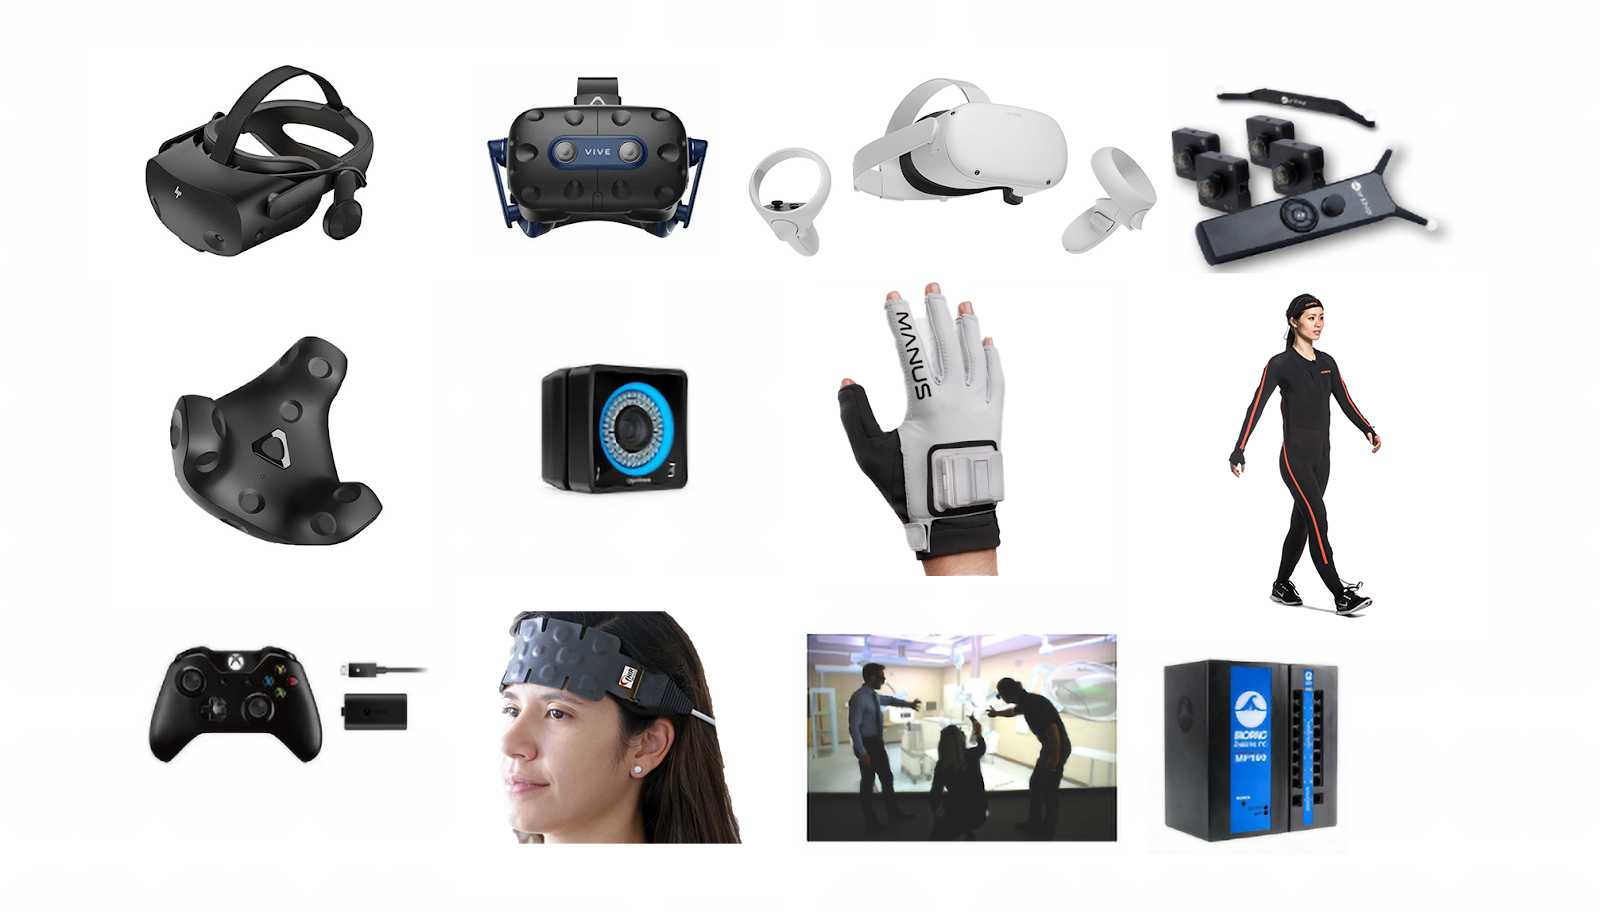 图片展示了多种虚拟现实设备，包括头戴式显示器、手柄、运动追踪器和其他感应配件。还有人在使用这些设备。